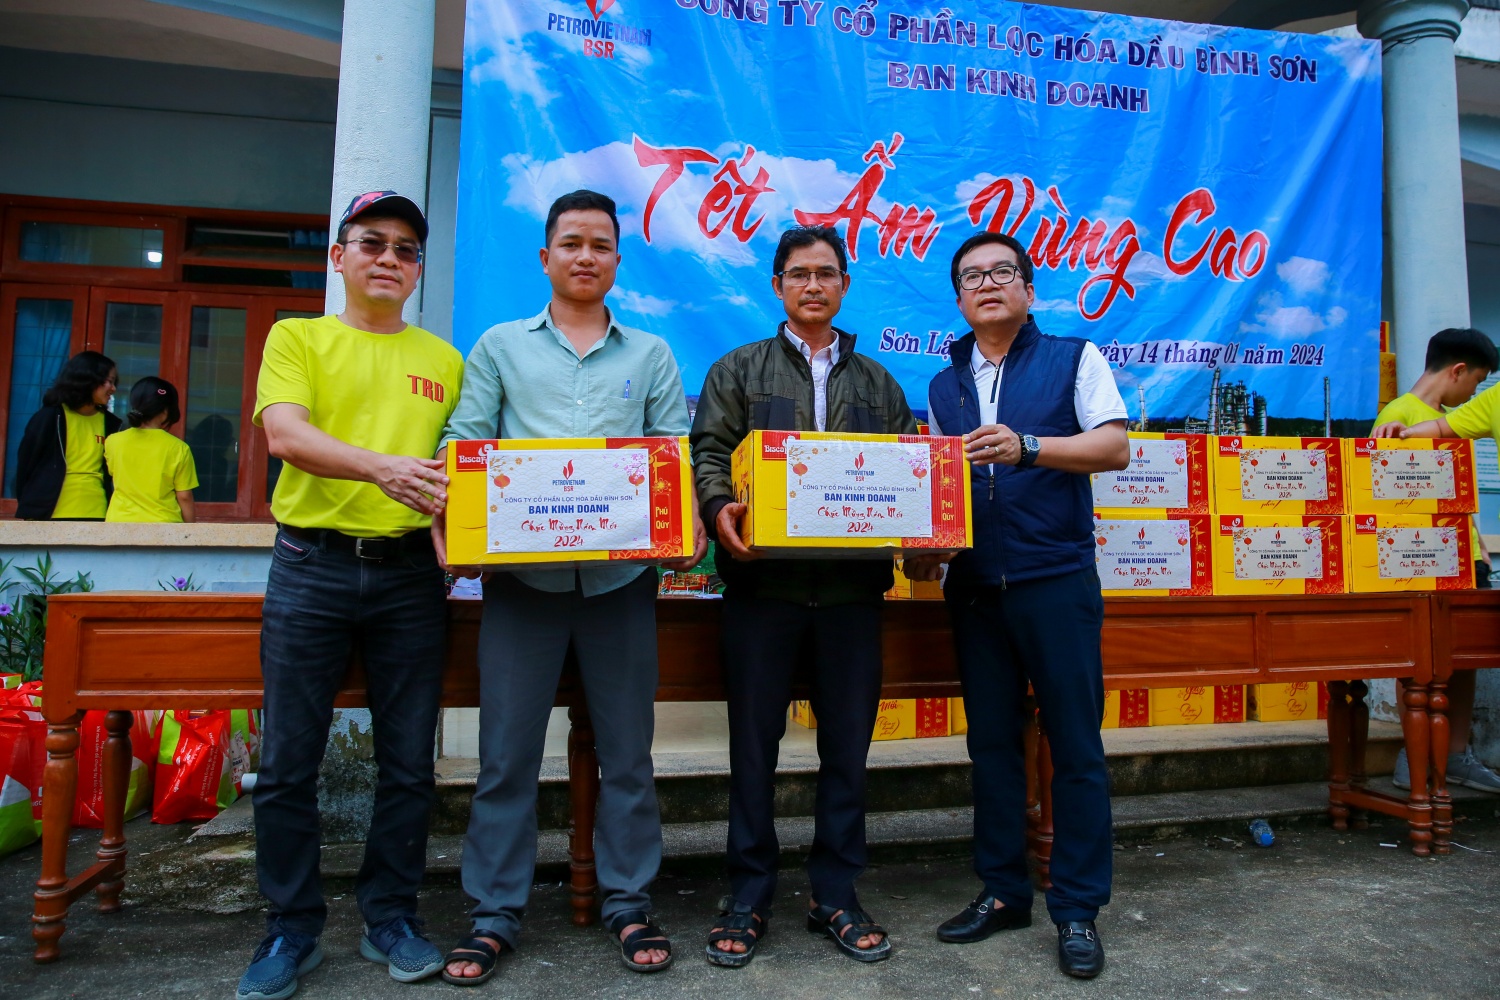 Ban Kinh doanh BSR mang “Tết ấm” đến vùng cao huyện Sơn Tây, tỉnh Quảng Ngãi